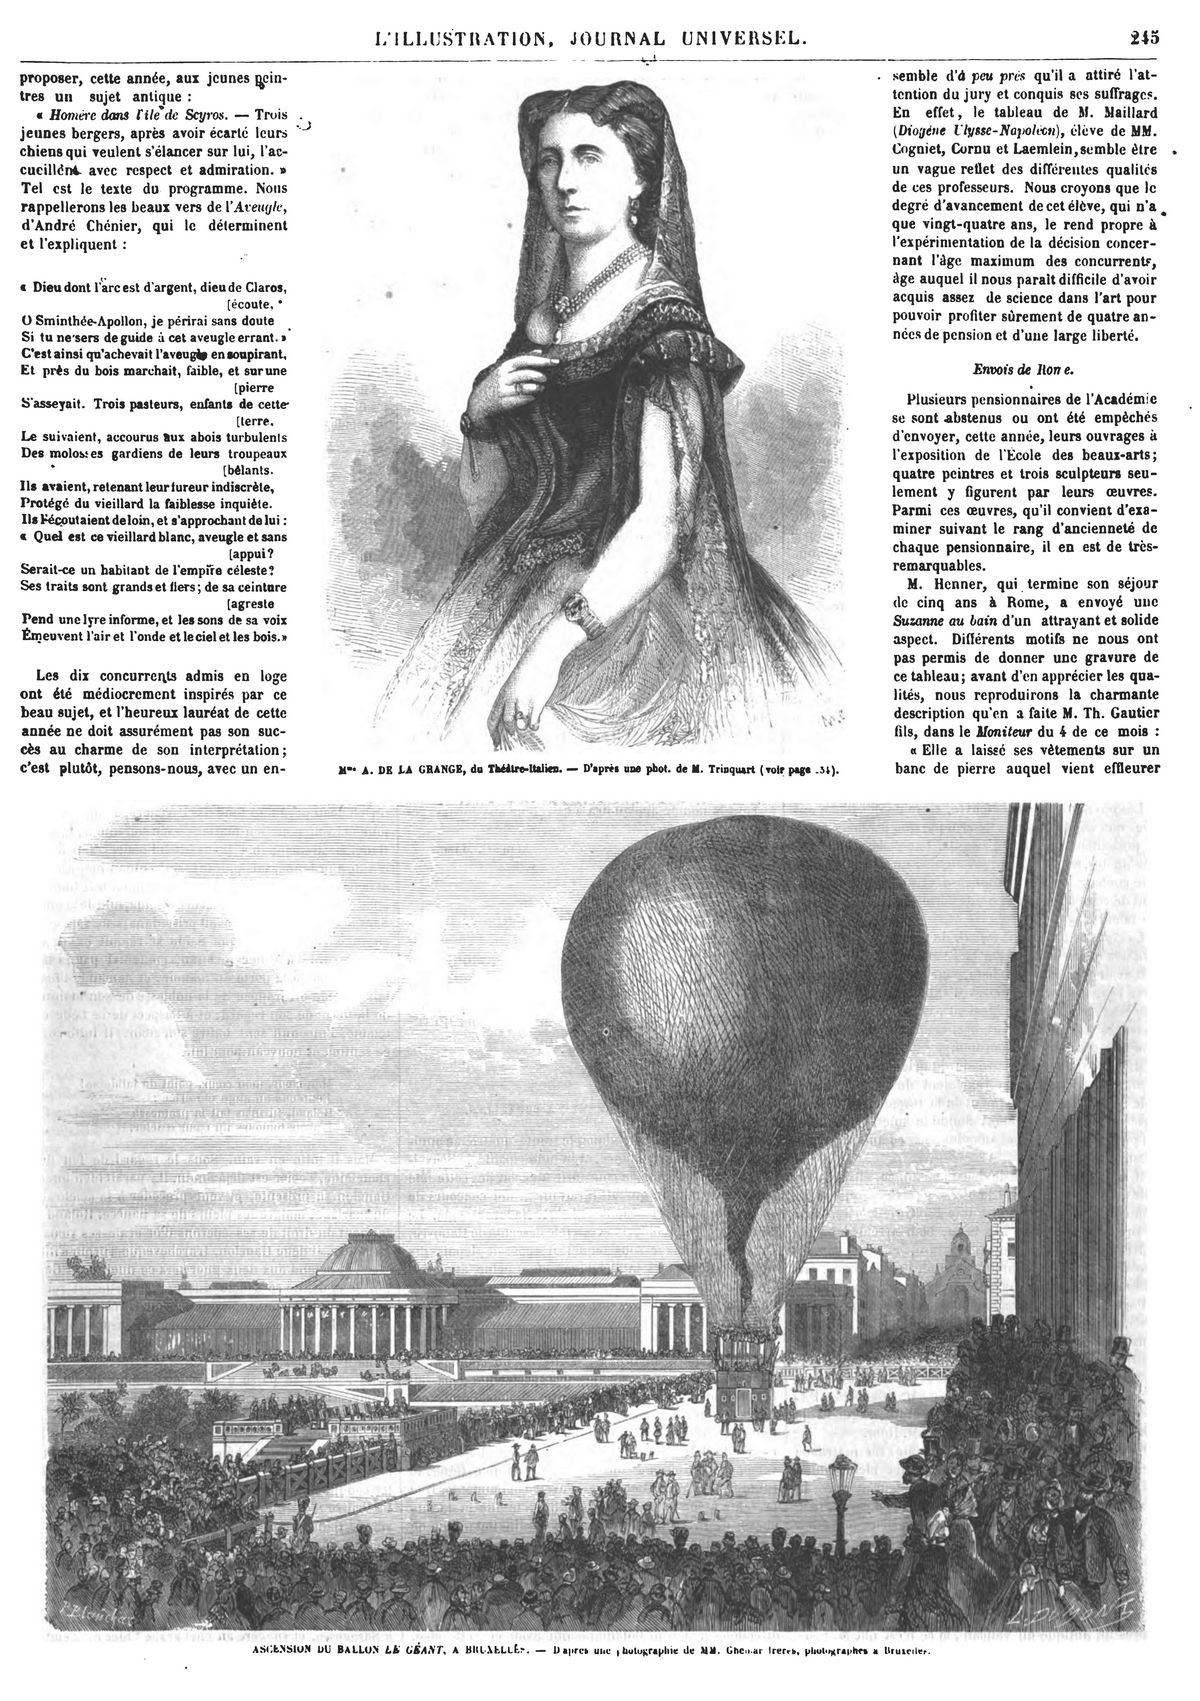 Mlle Lagrangp, cantatrice du Théâtre-Italien. — Ascension du ballon le Géant, à Bruxelle